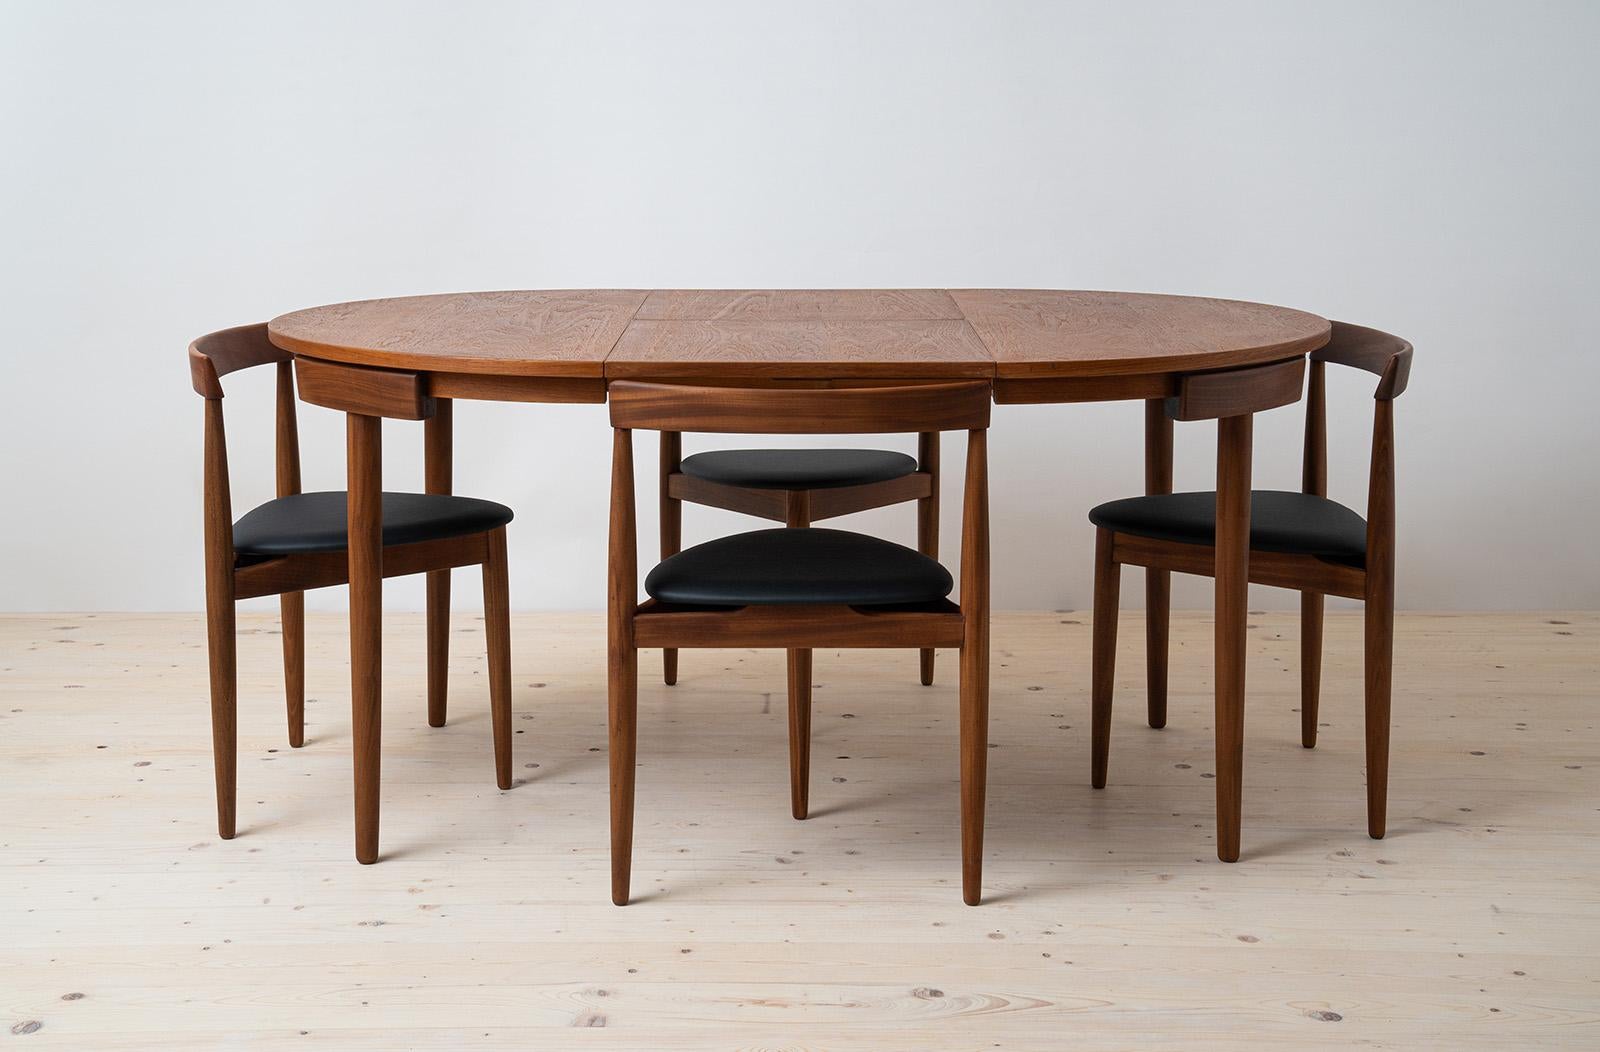 Esszimmer-Set aus Teakholz von Hans Olsen, 4 Stühle, runder Tisch, dänische Moderne, 1950er Jahre (Dänisch)